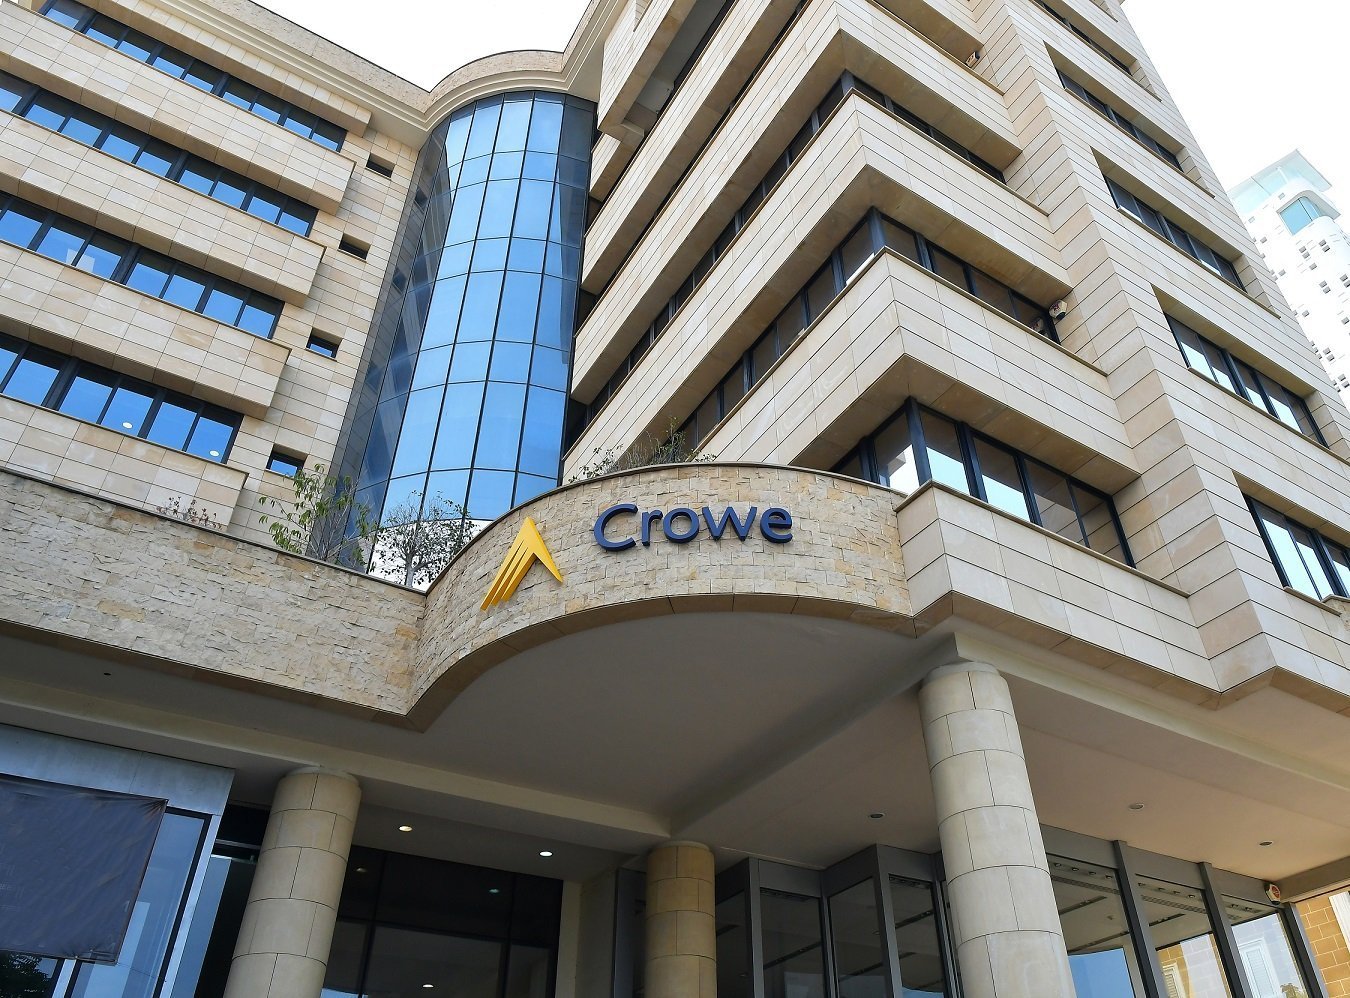 Crowe Horwath: Renamed to Crowe